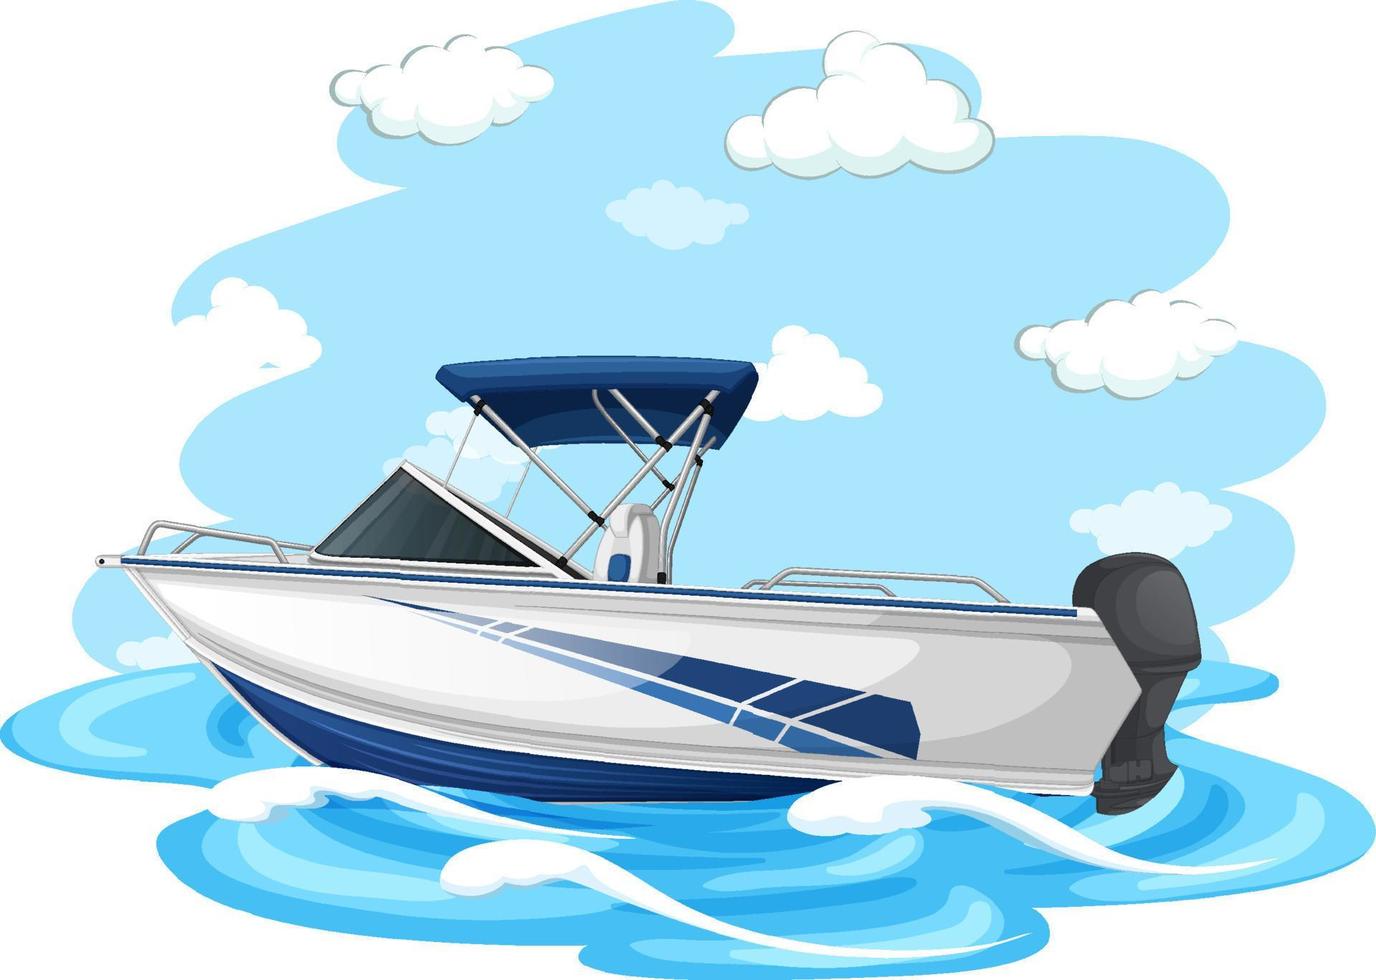 motorbåt i tecknad stil på vit bakgrund vektor